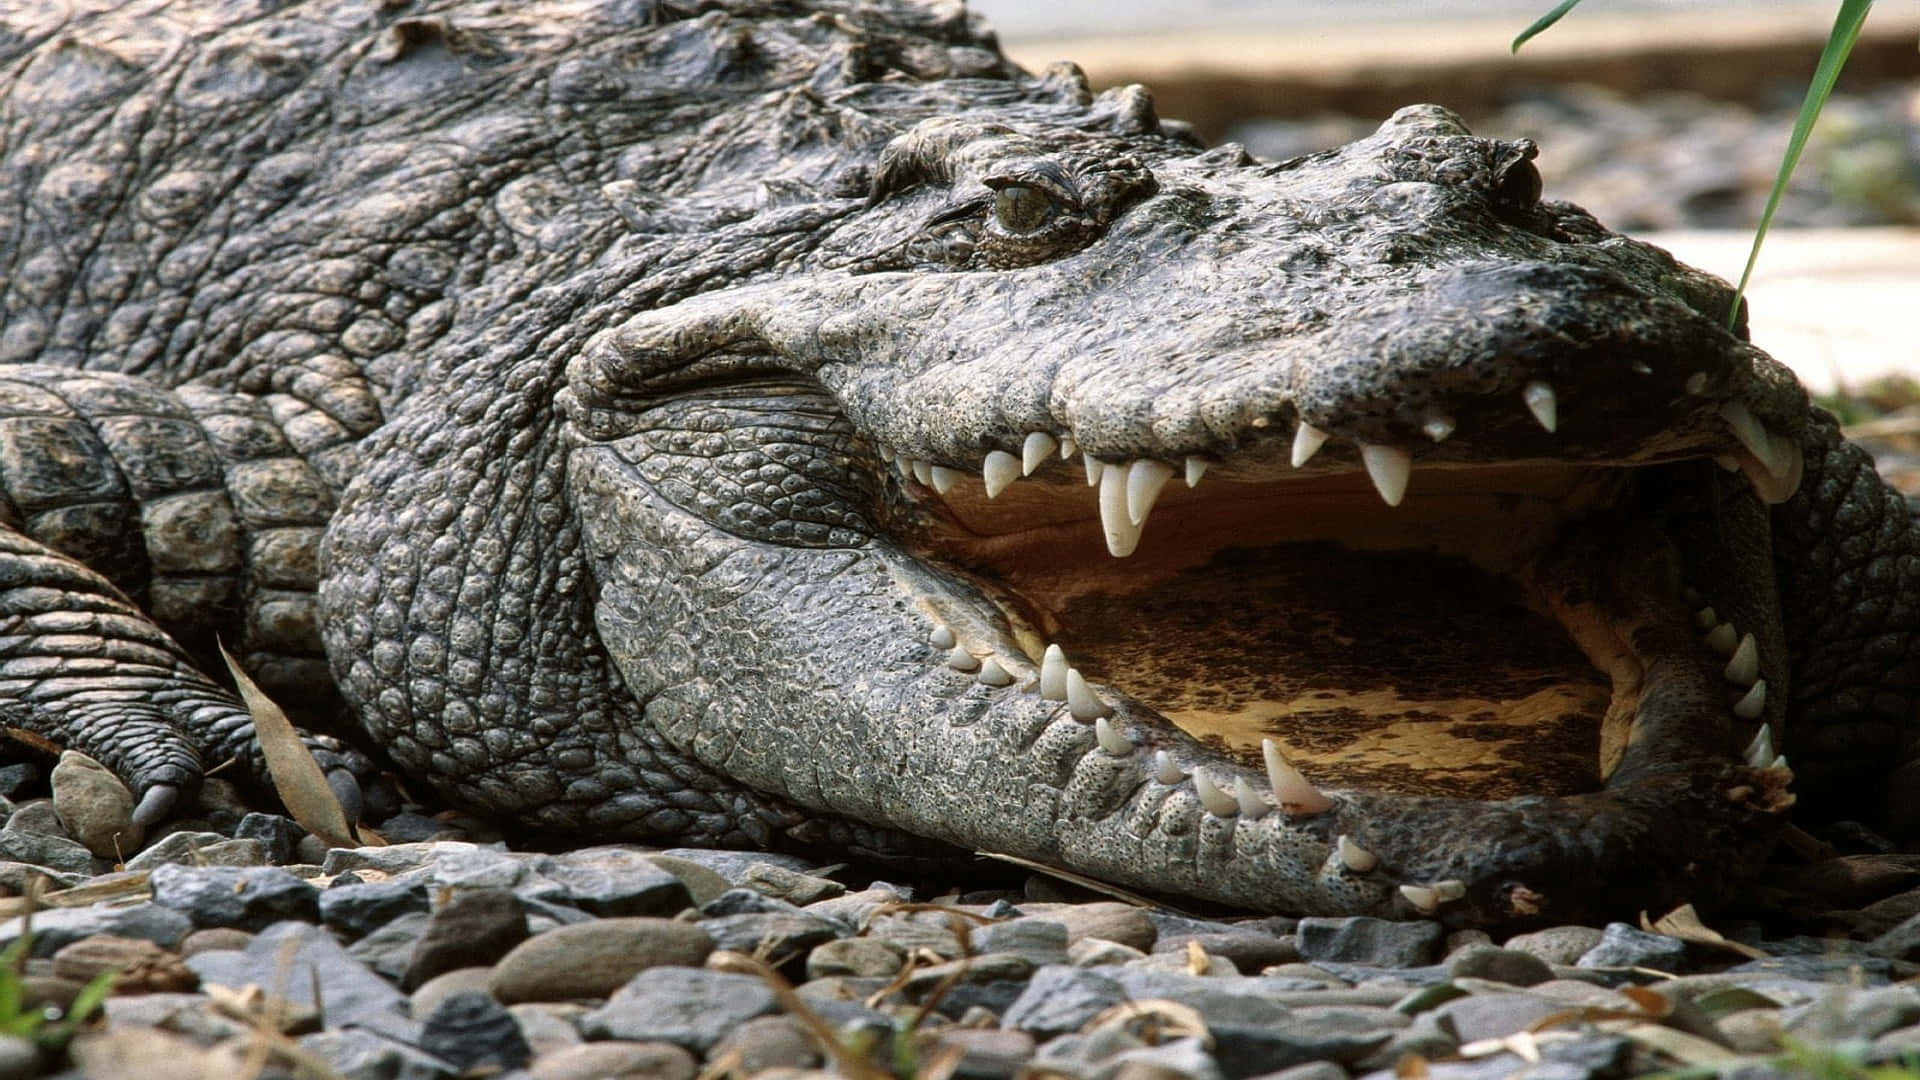 Einebildunterschrift Eines Alligators In Seinem Natürlichen Lebensraum